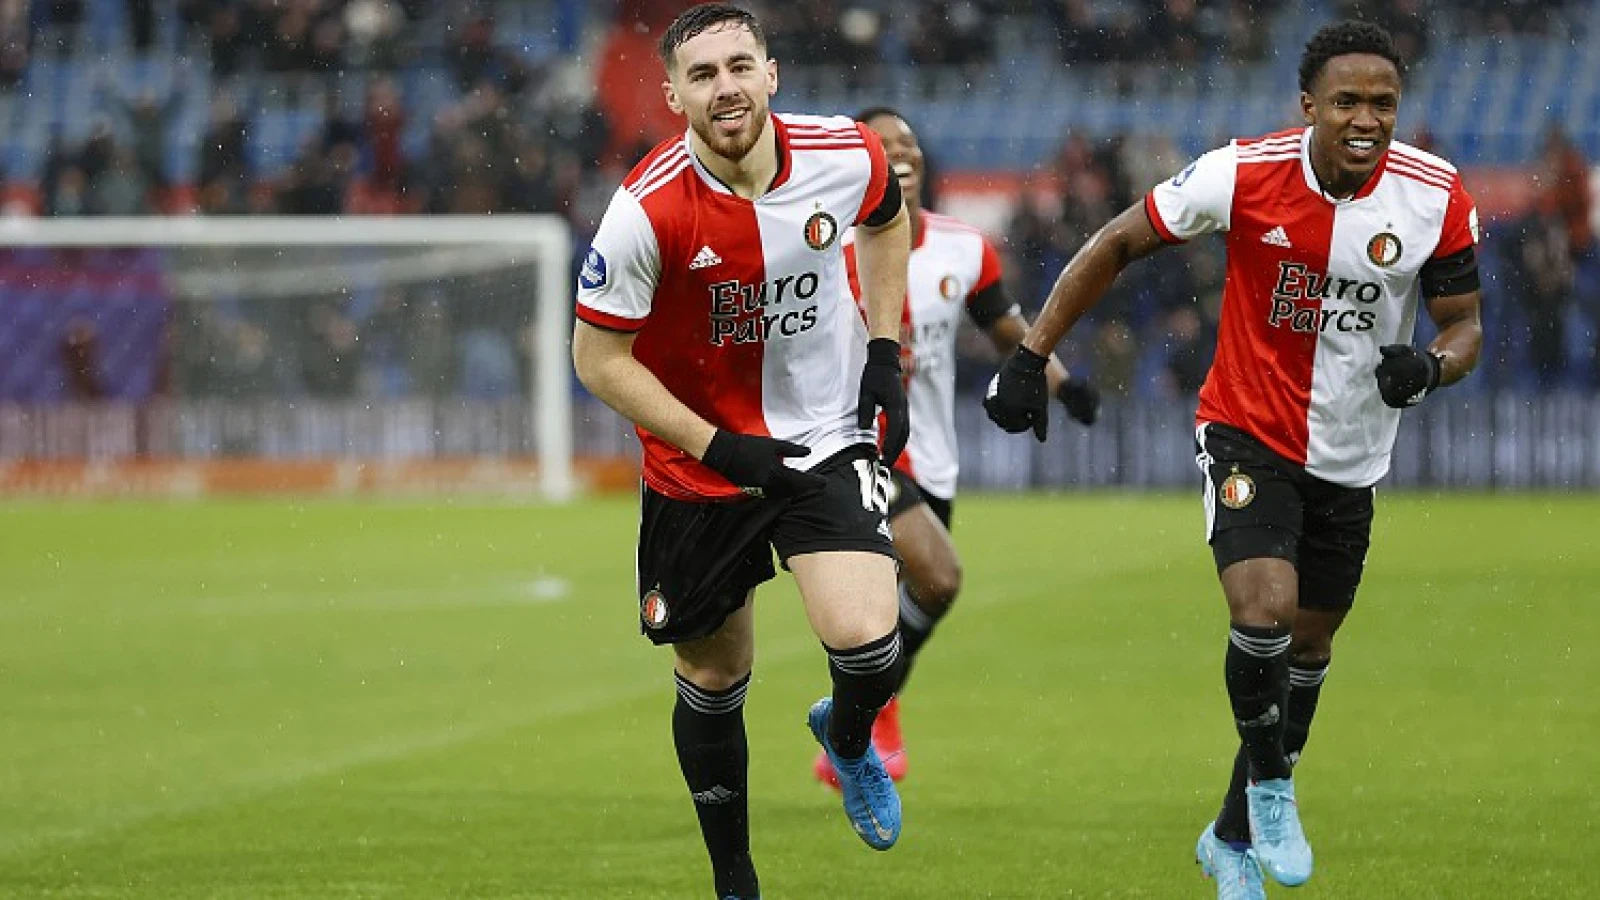 Uitblinkers bij Feyenoord: 'Dat voegt hij nu duidelijk toe'